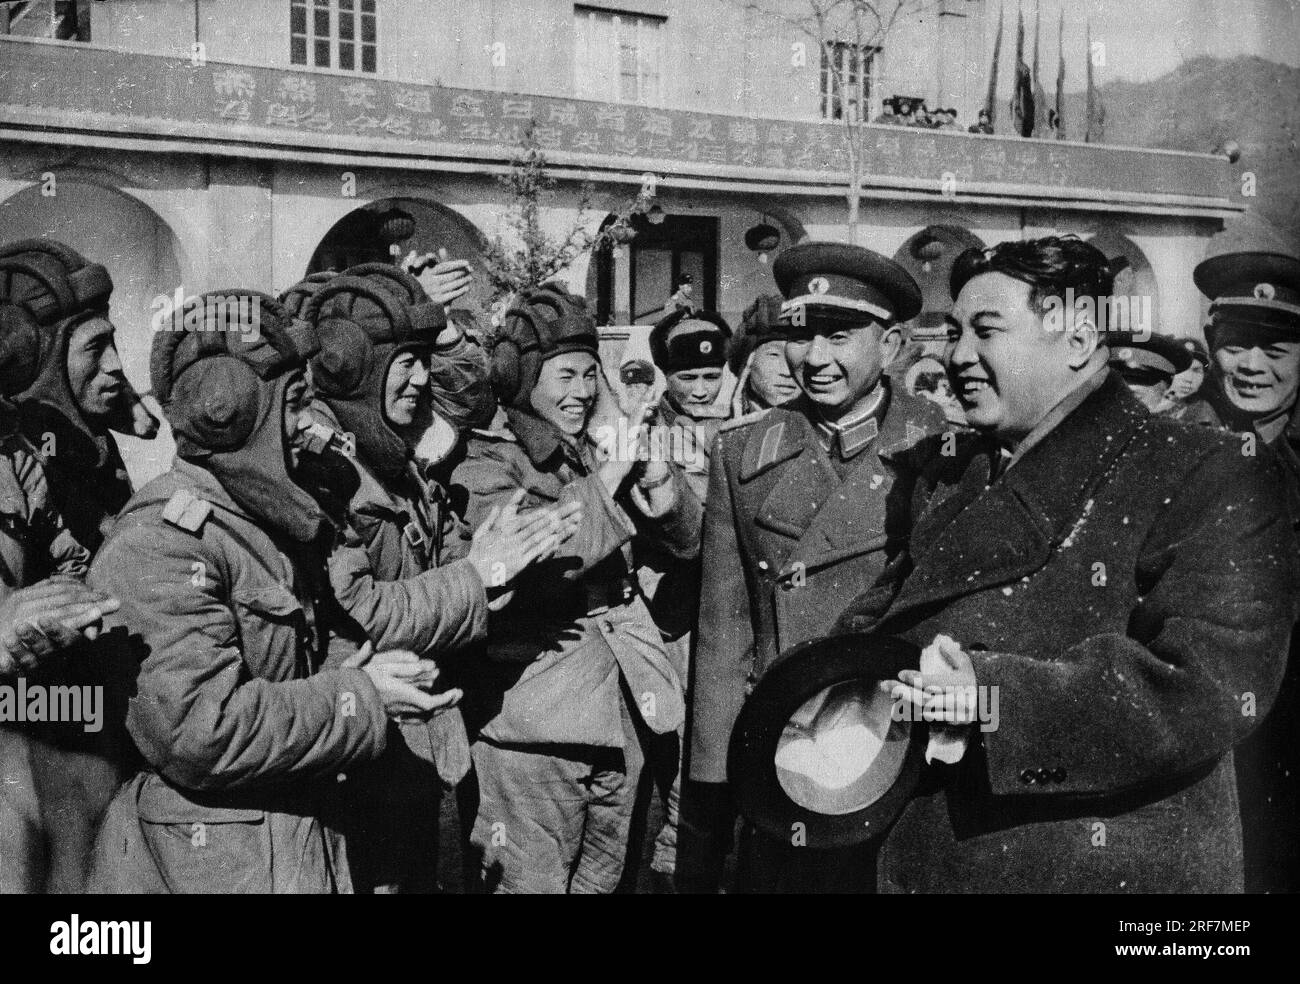 Kim il Song visitant les pilotes de son Aviation, in "la Guerre de Coree", Chine, 1959, Coll. Selva (Kim il Sung, leader della Corea del Nord, in visita alle truppe dell'aviazione, dalla "Guerra di Corea", Cina 1959) Foto Stock